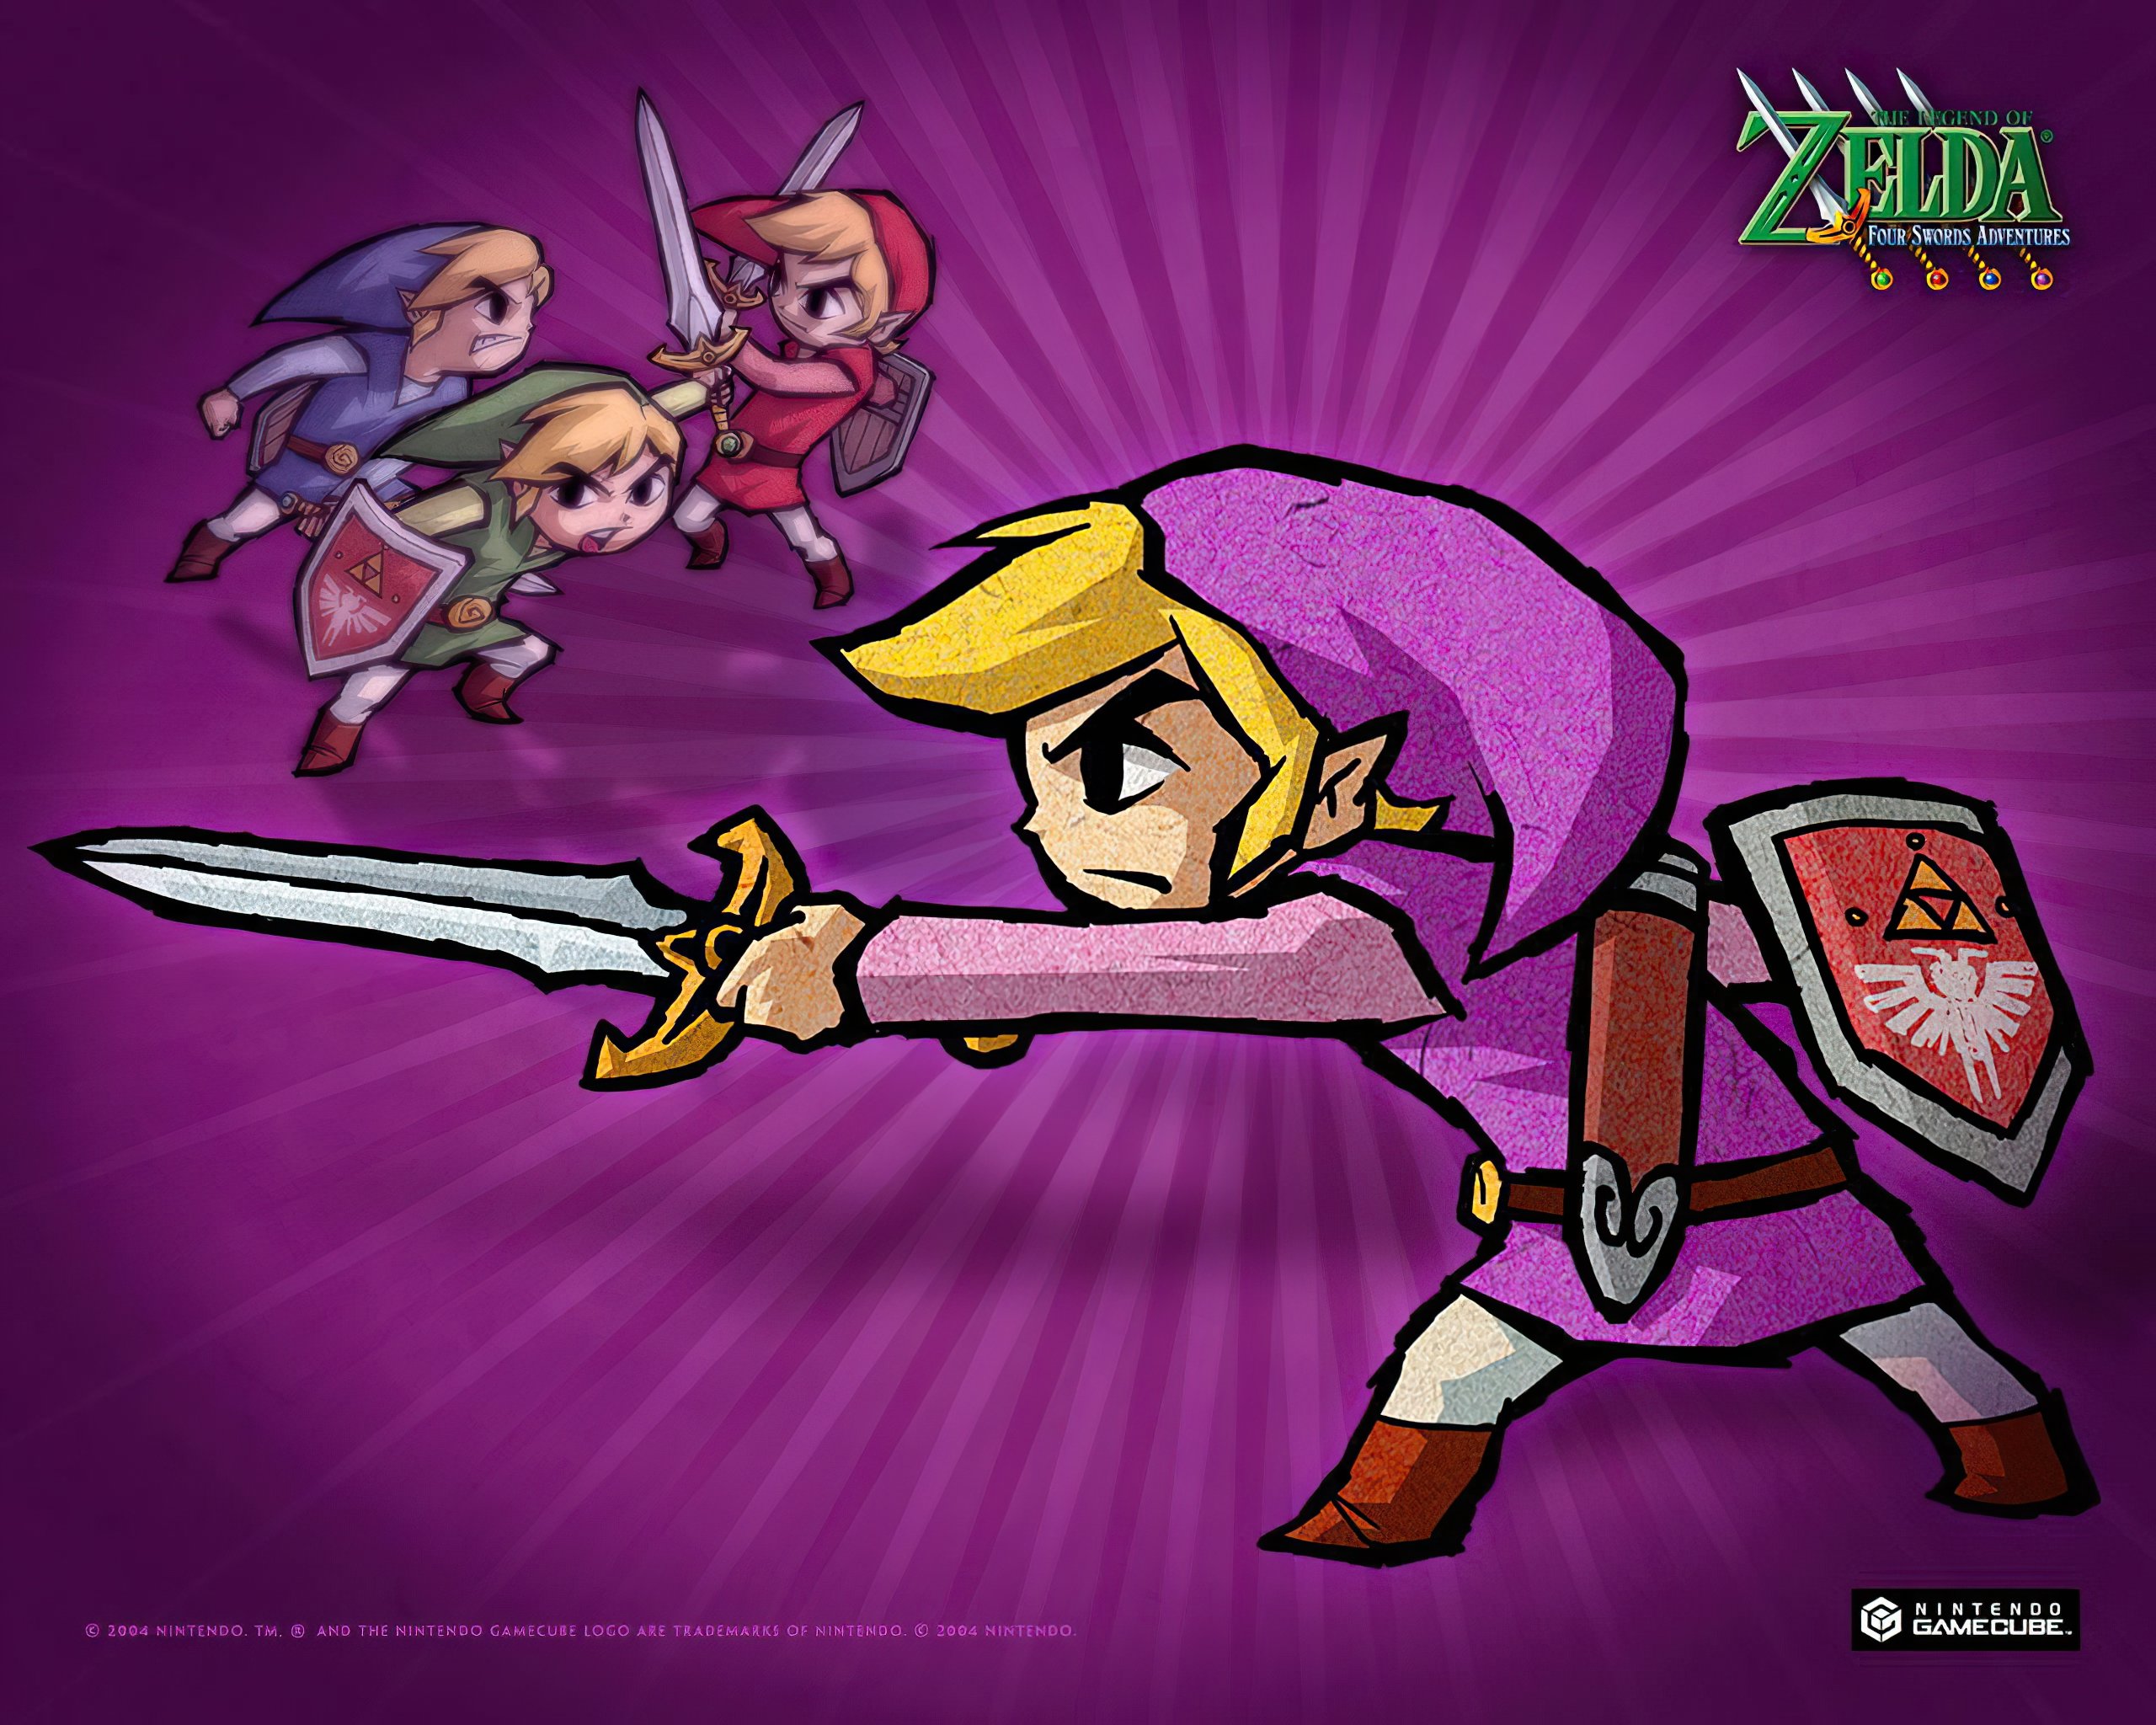 HD desktop wallpaper: Video Game, The Legend Of Zelda: Four Swords Adventures download free picture